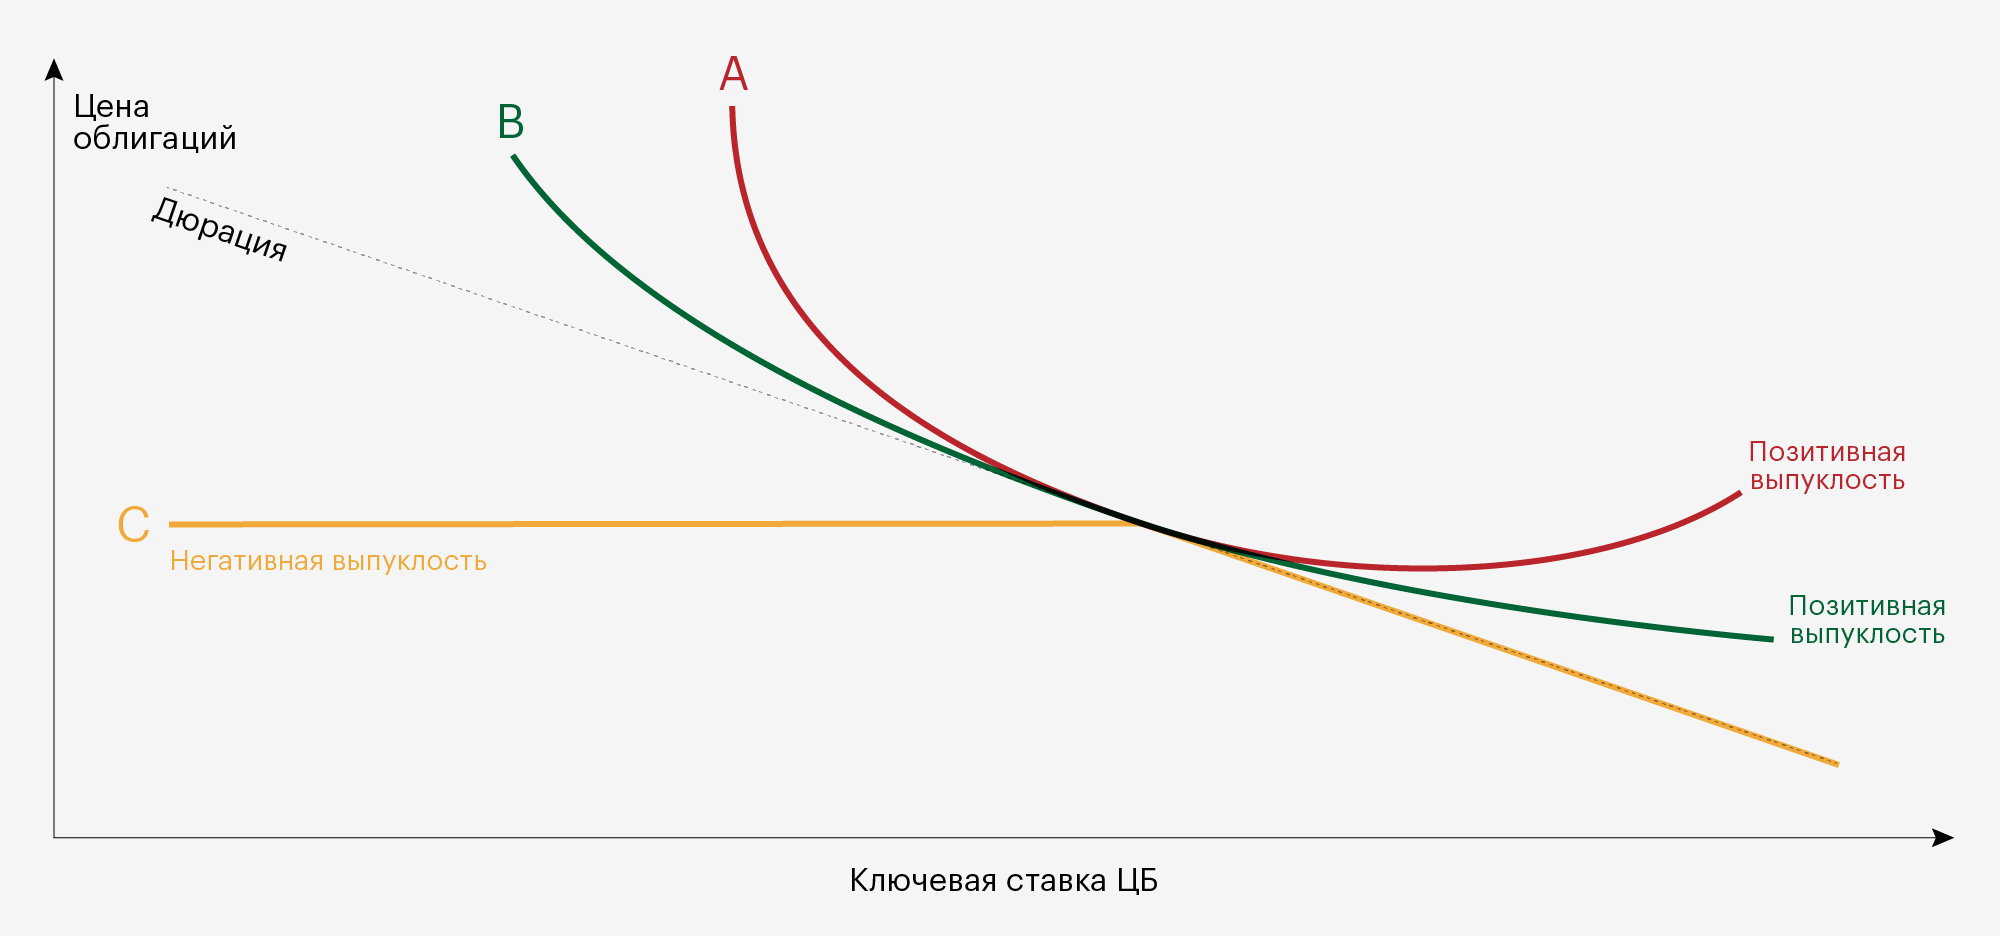 Красная и зеленые линии — графики цены двух облигаций с позитивной выпуклостью. Желтая линия — график цены облигации с негативной выпуклостью. Пунктирная линия — дюрация облигаций. Выпуклые линии отклоняются от пунктирной линии при изменении процентных ставок